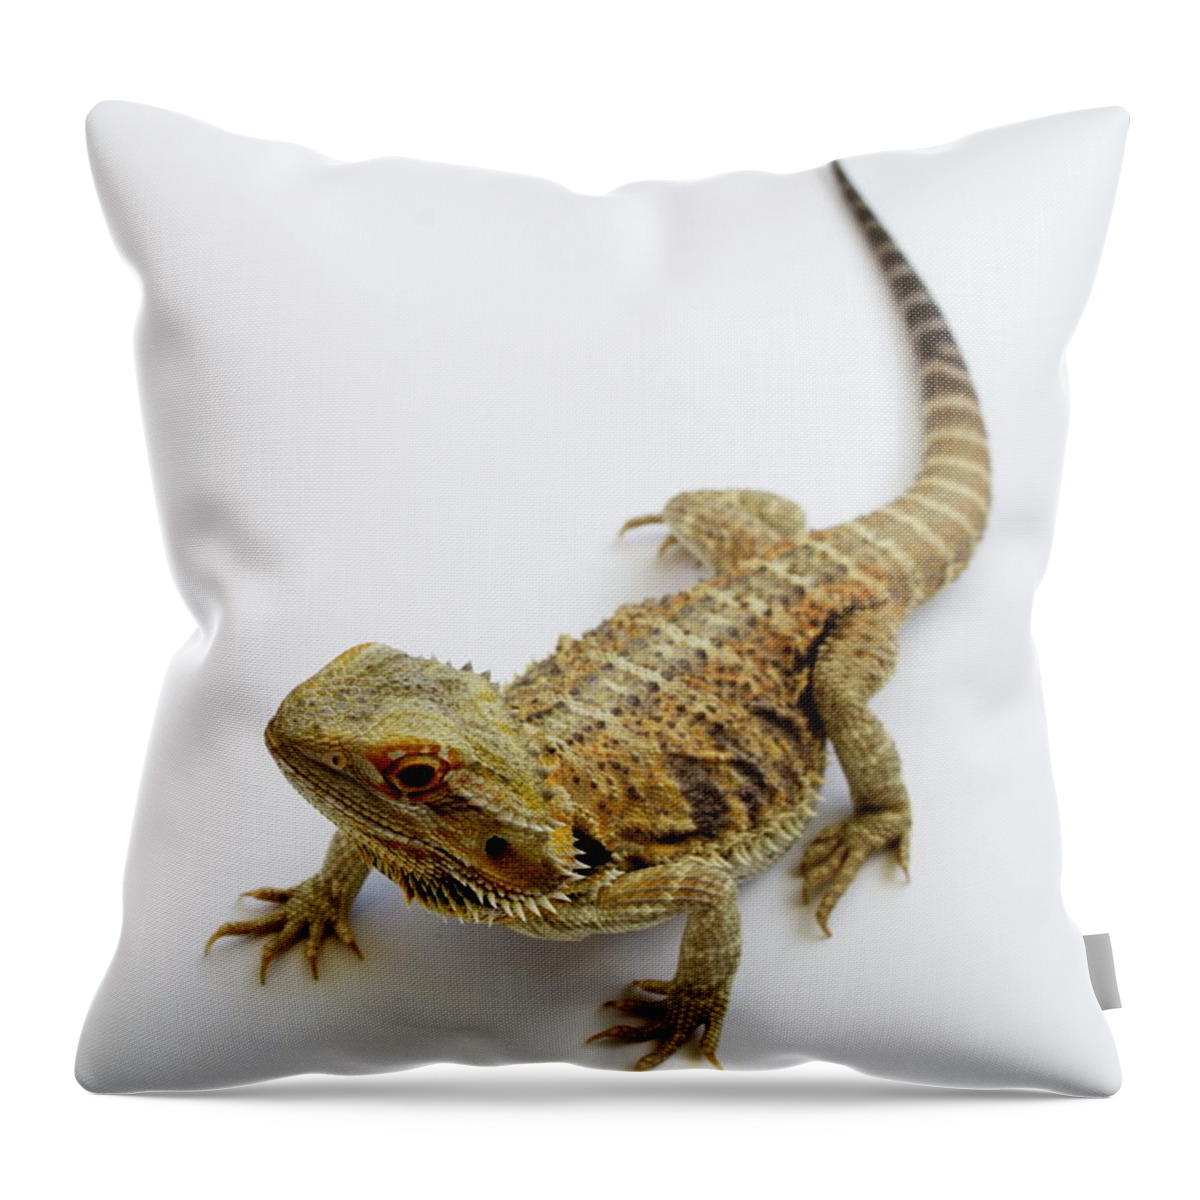 Lizard Throw Pillow featuring the photograph Bearded Dragon Lizard #1 by Nathan Abbott